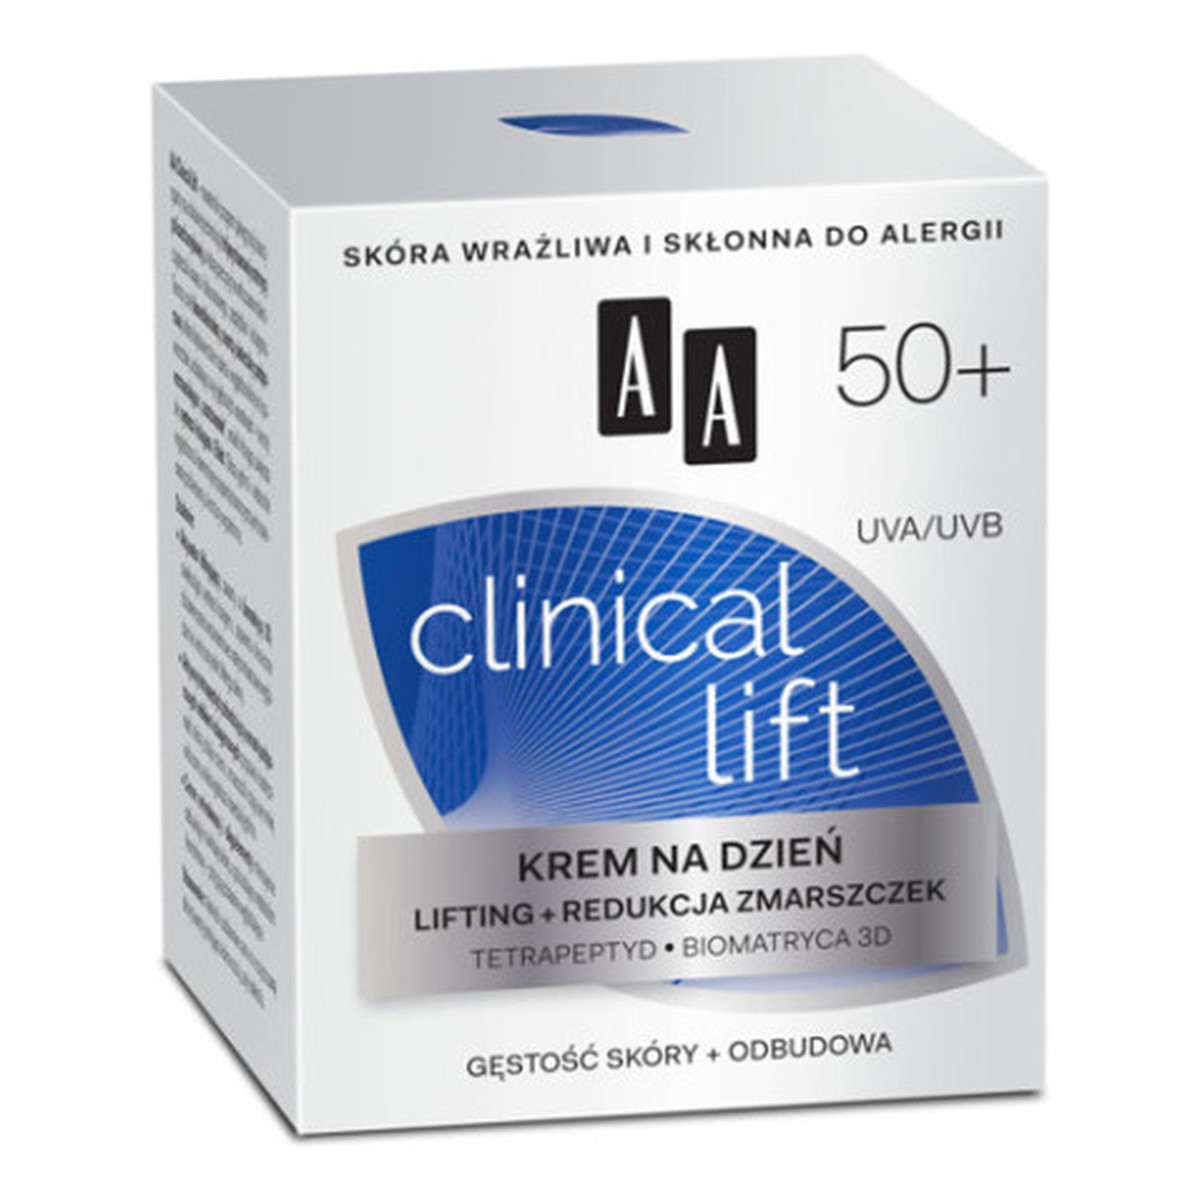 AA 50+ Clinical Lift Krem Do Twarzy Na Dzień Lifting i Redukcja Zmarszczek 50ml